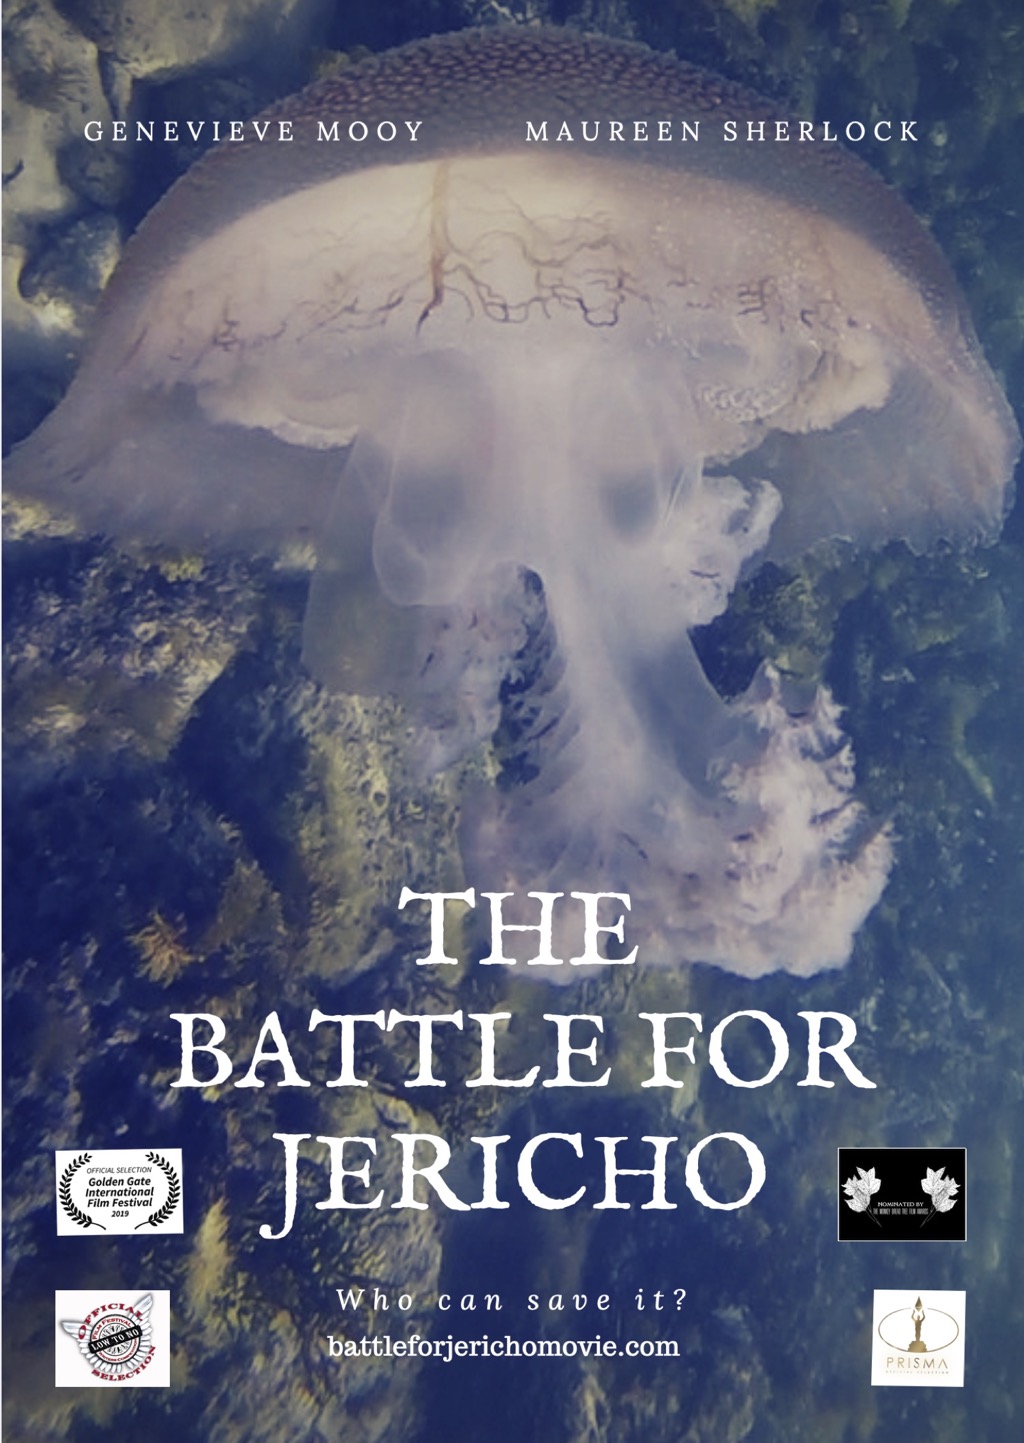 Jericho Poster 4 copy